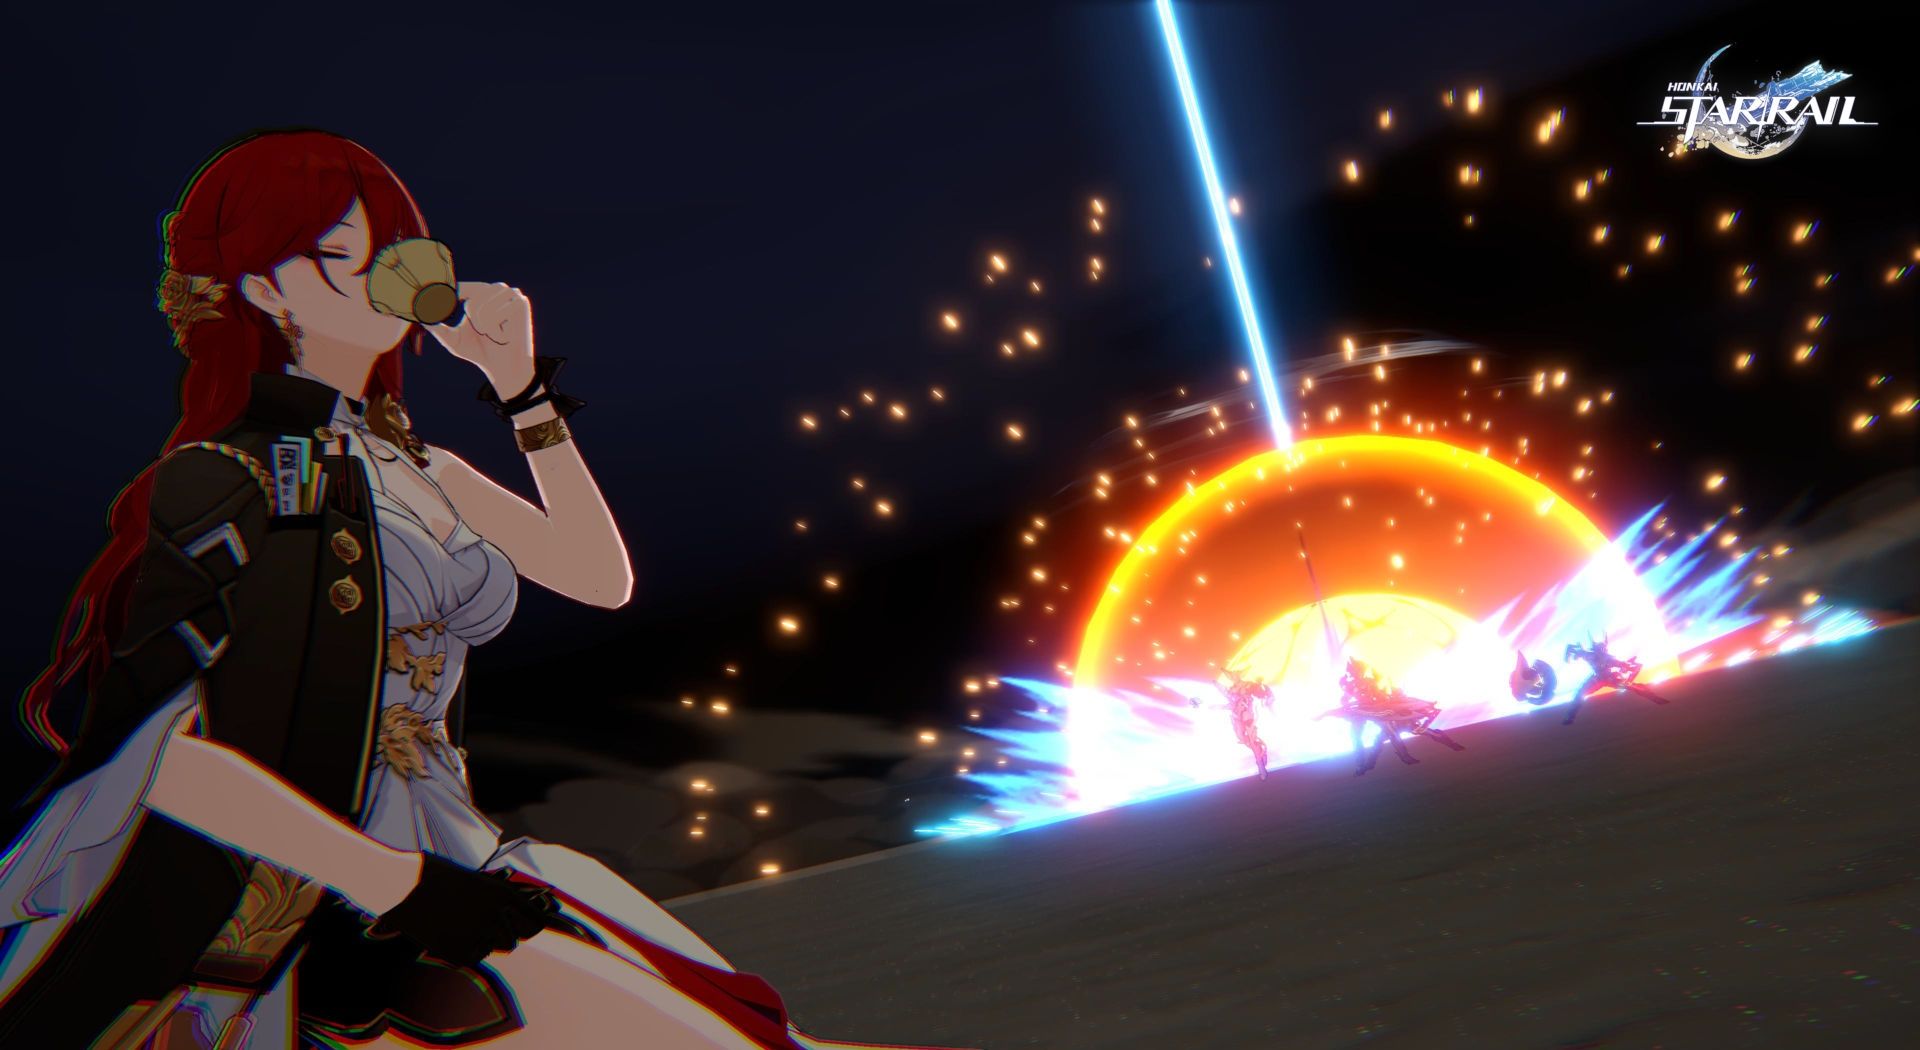 Himeko utilise sa capacité ultime contre les ennemis dans Honkai Star Rail.  Au loin, un faisceau laser concentré tombe sur eux créant une explosion, tandis qu'elle boit du thé paisiblement.